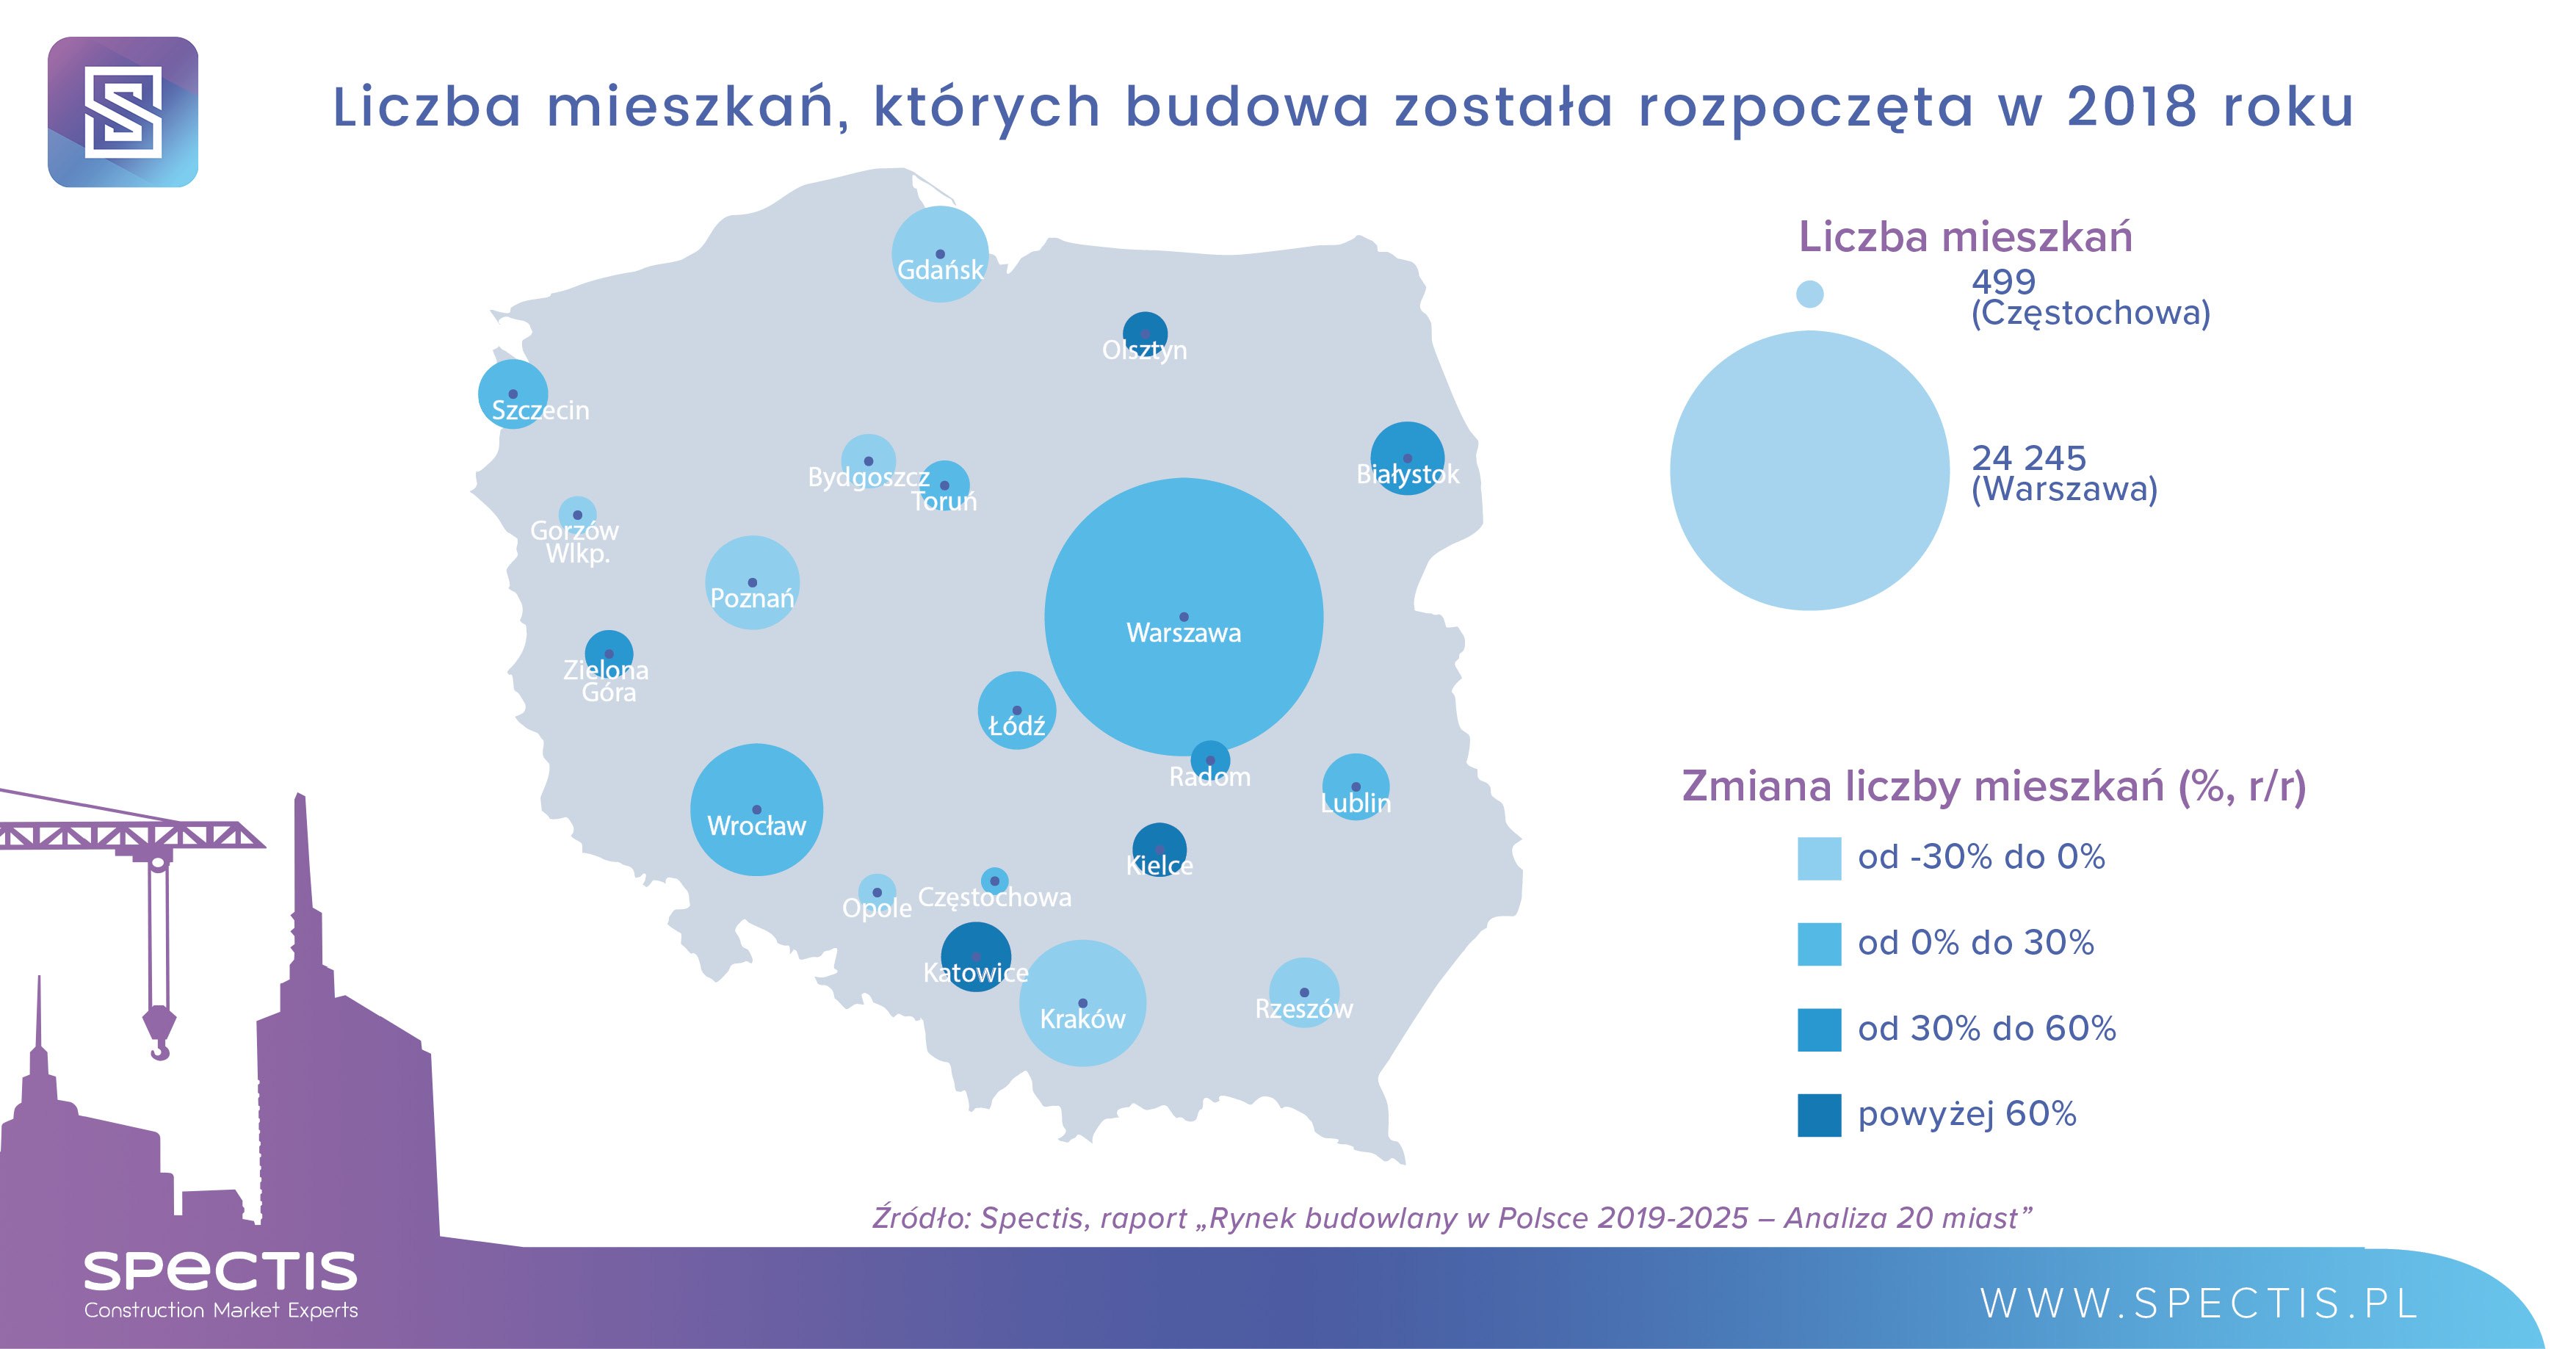 Analiza potencjału budowlanego 20 największych miast w Polsce